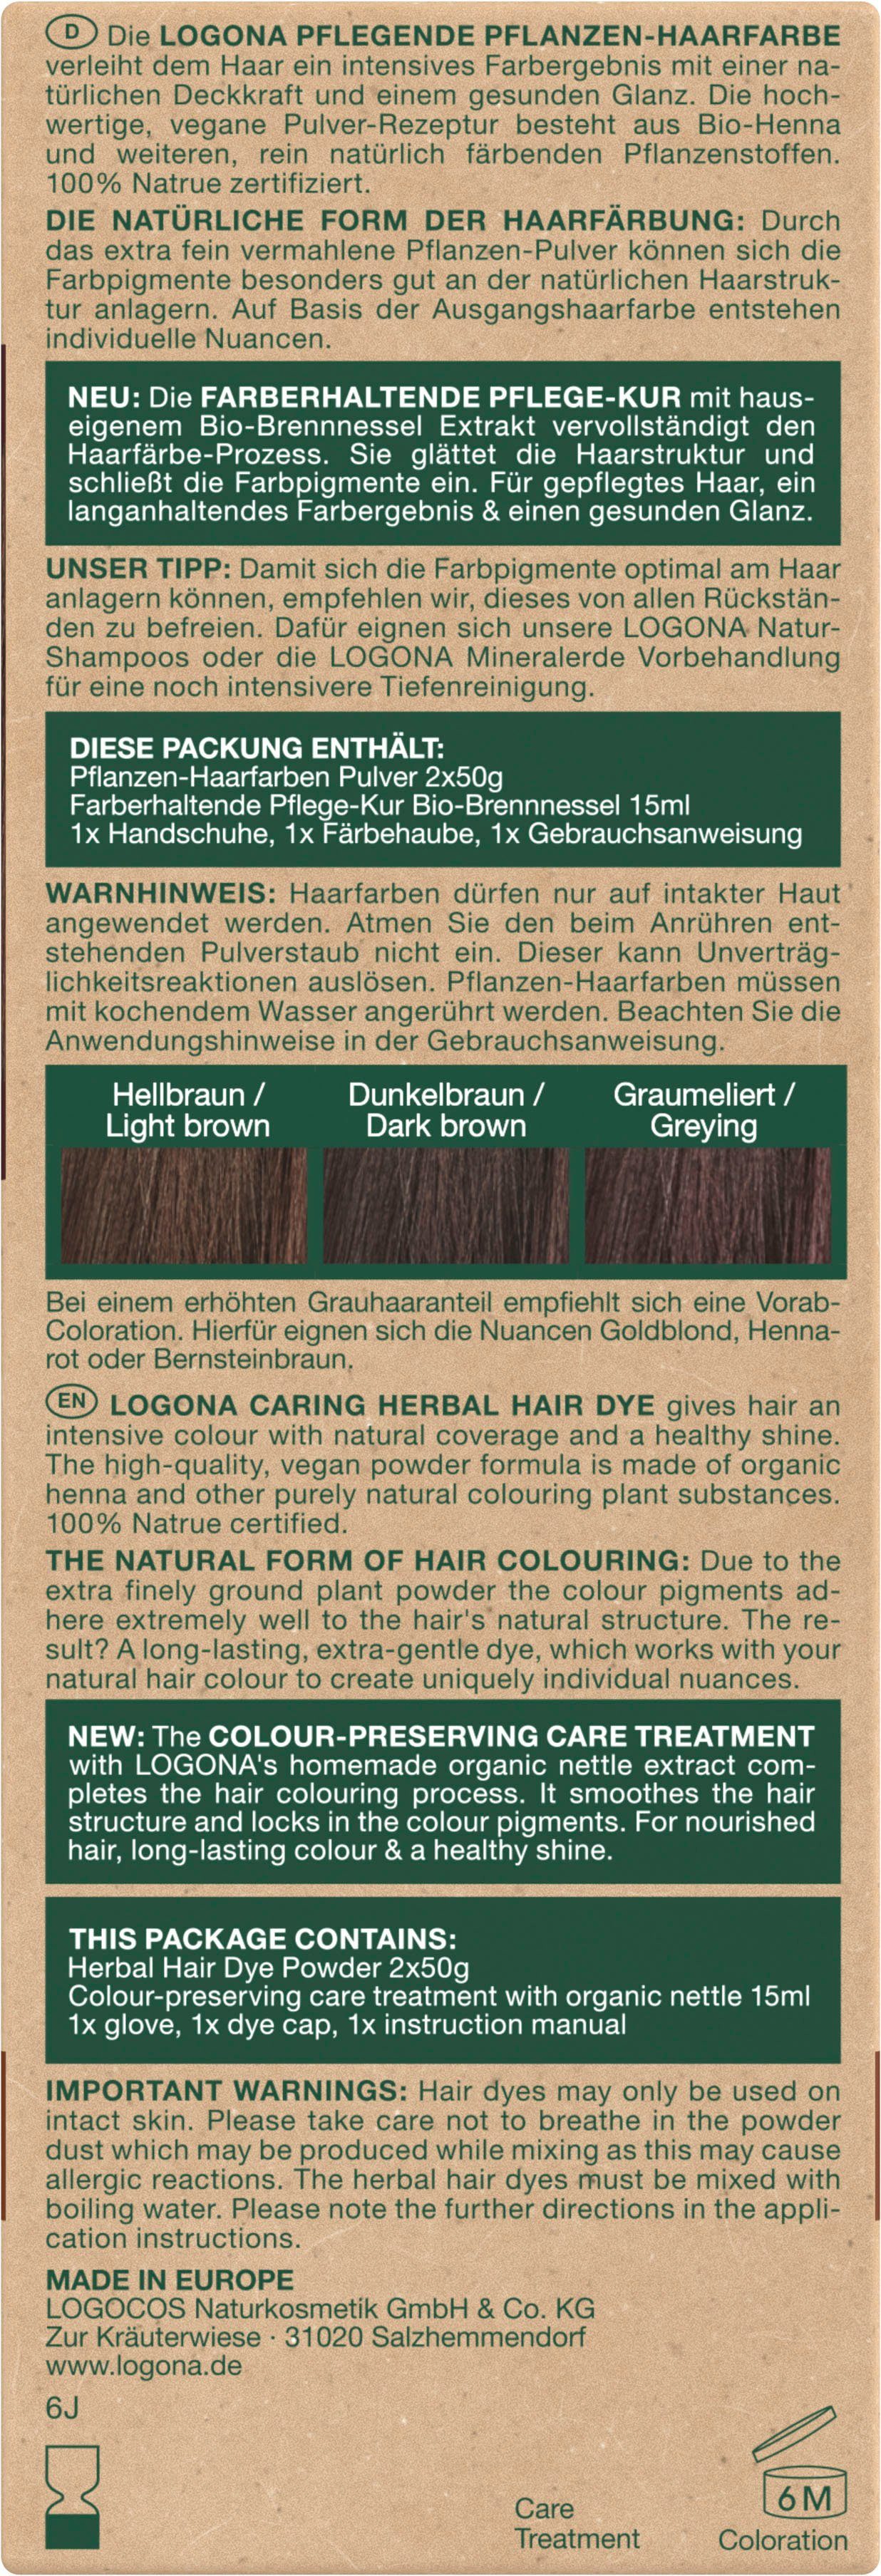 Pflanzen-Haarfarbe LOGONA Kaffeebraun 10 Haarfarbe Pulver